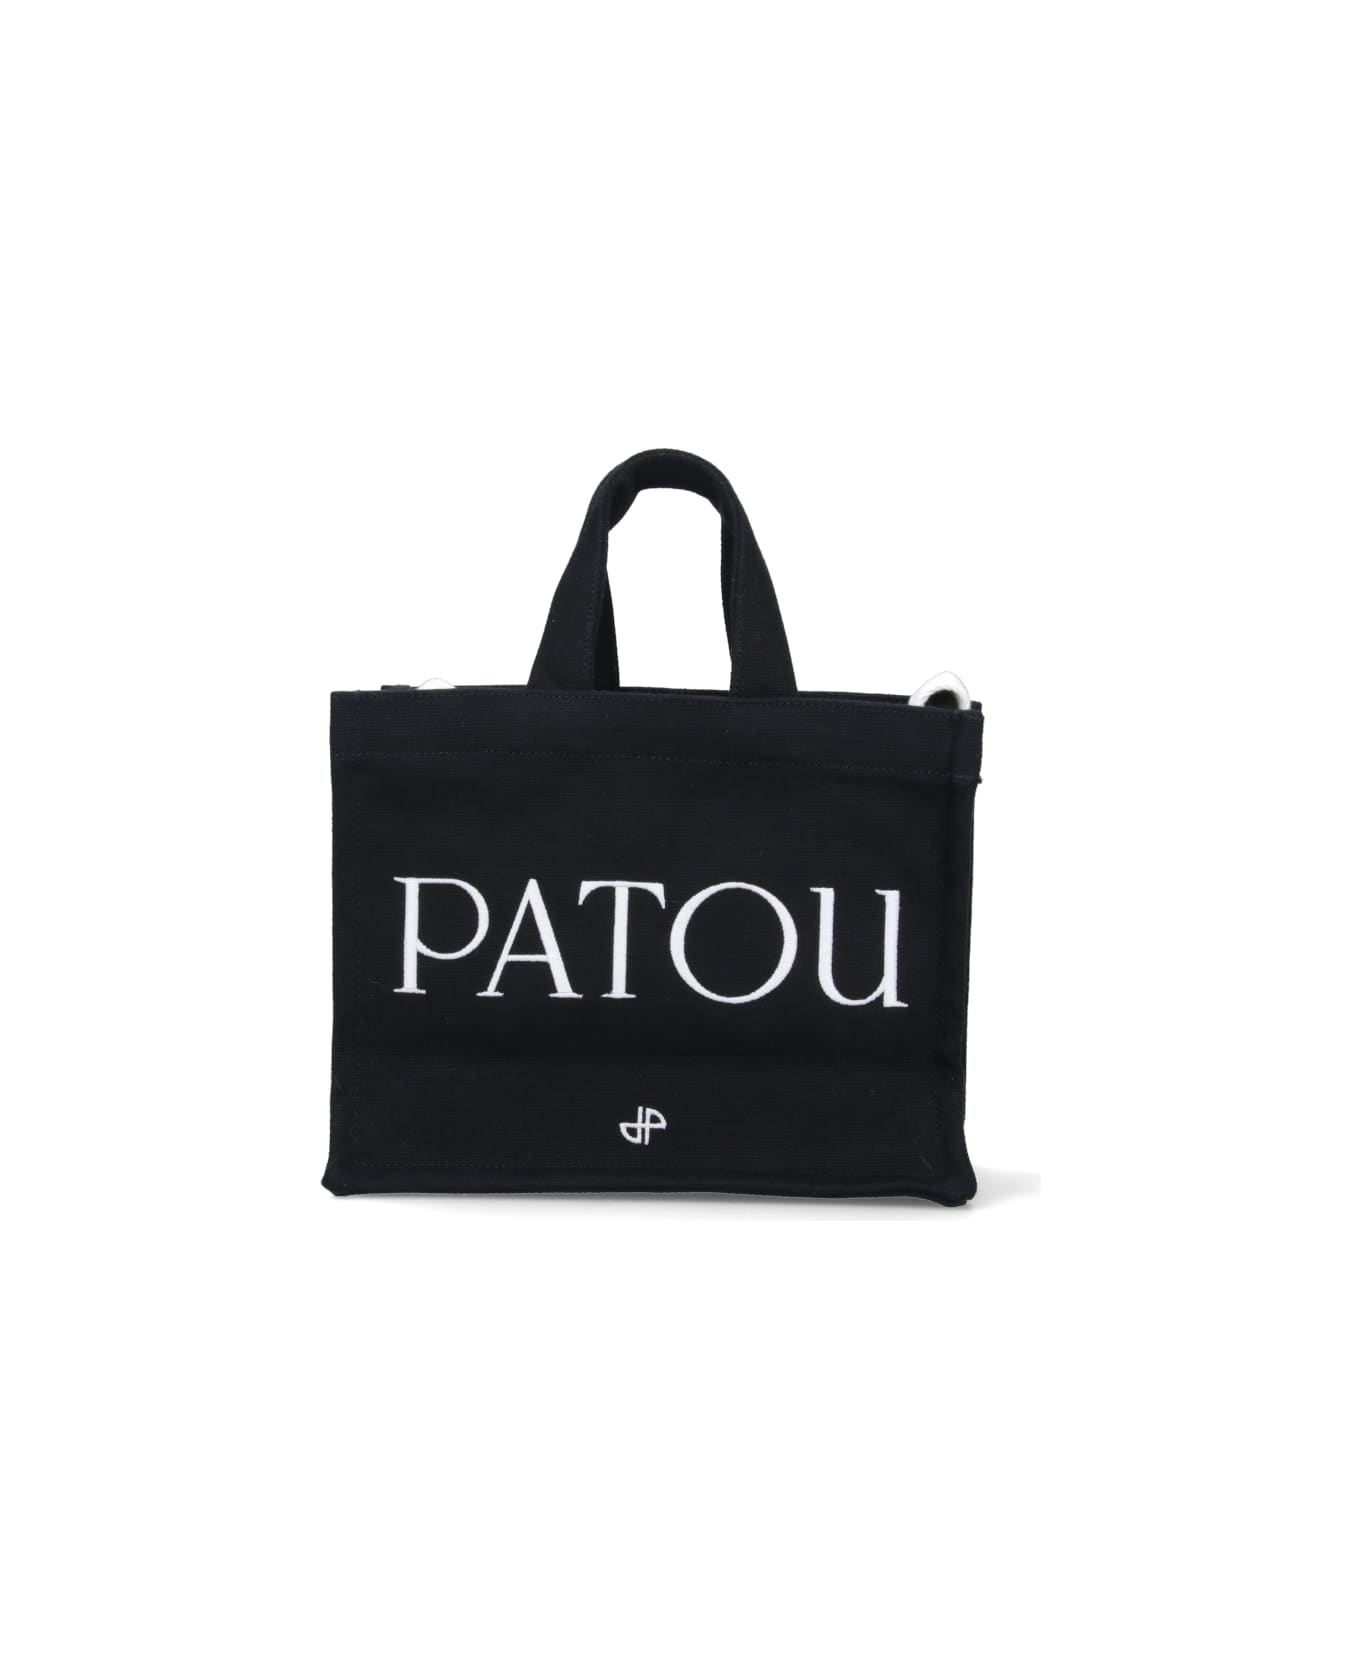 Patou Logo Tote Bag - Black  